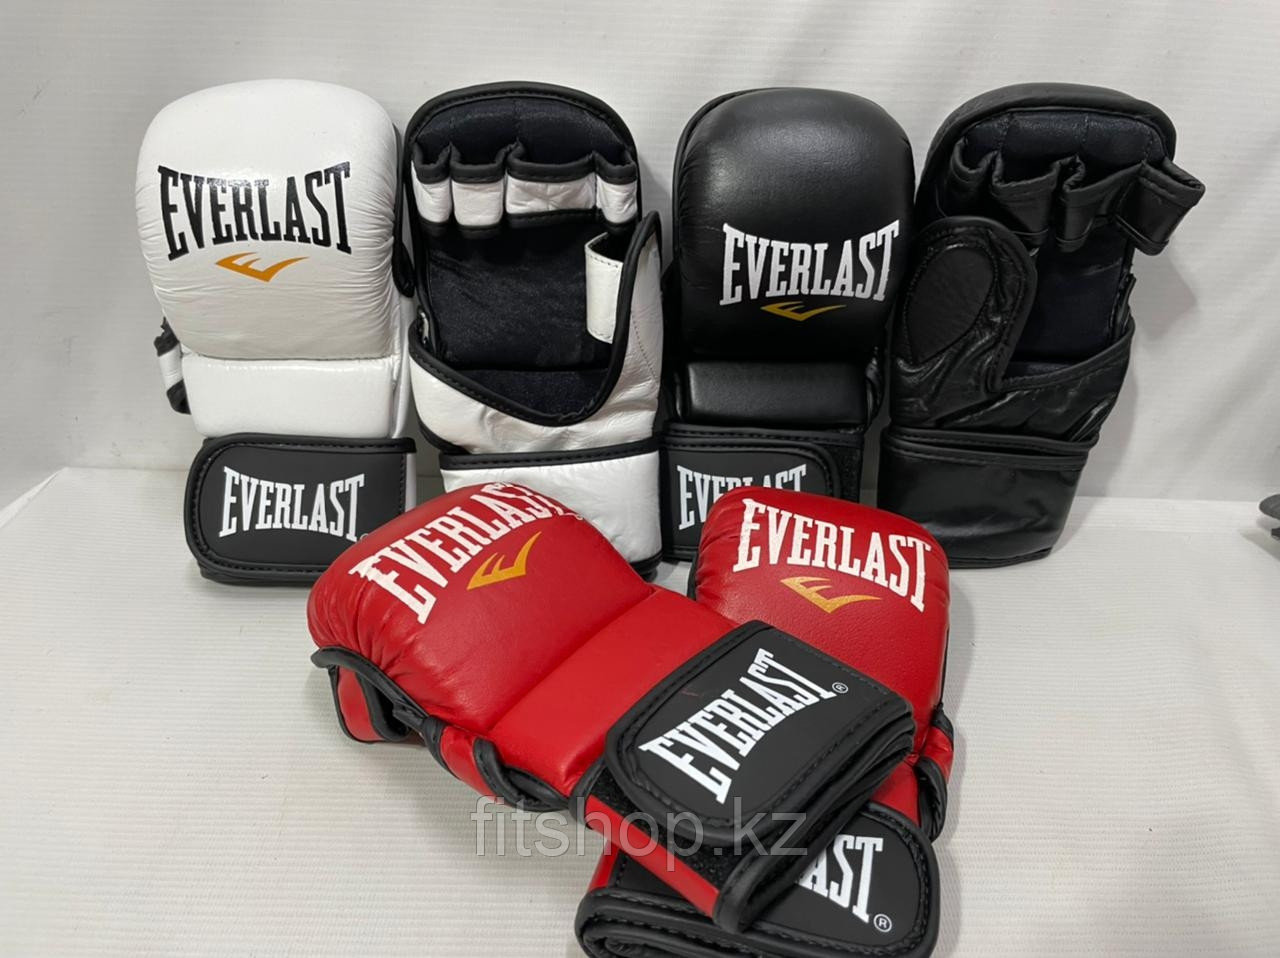 Перчатки-накладки  Everlast  (Черепашки) для тренировок и соревнований (натуральная кожа)